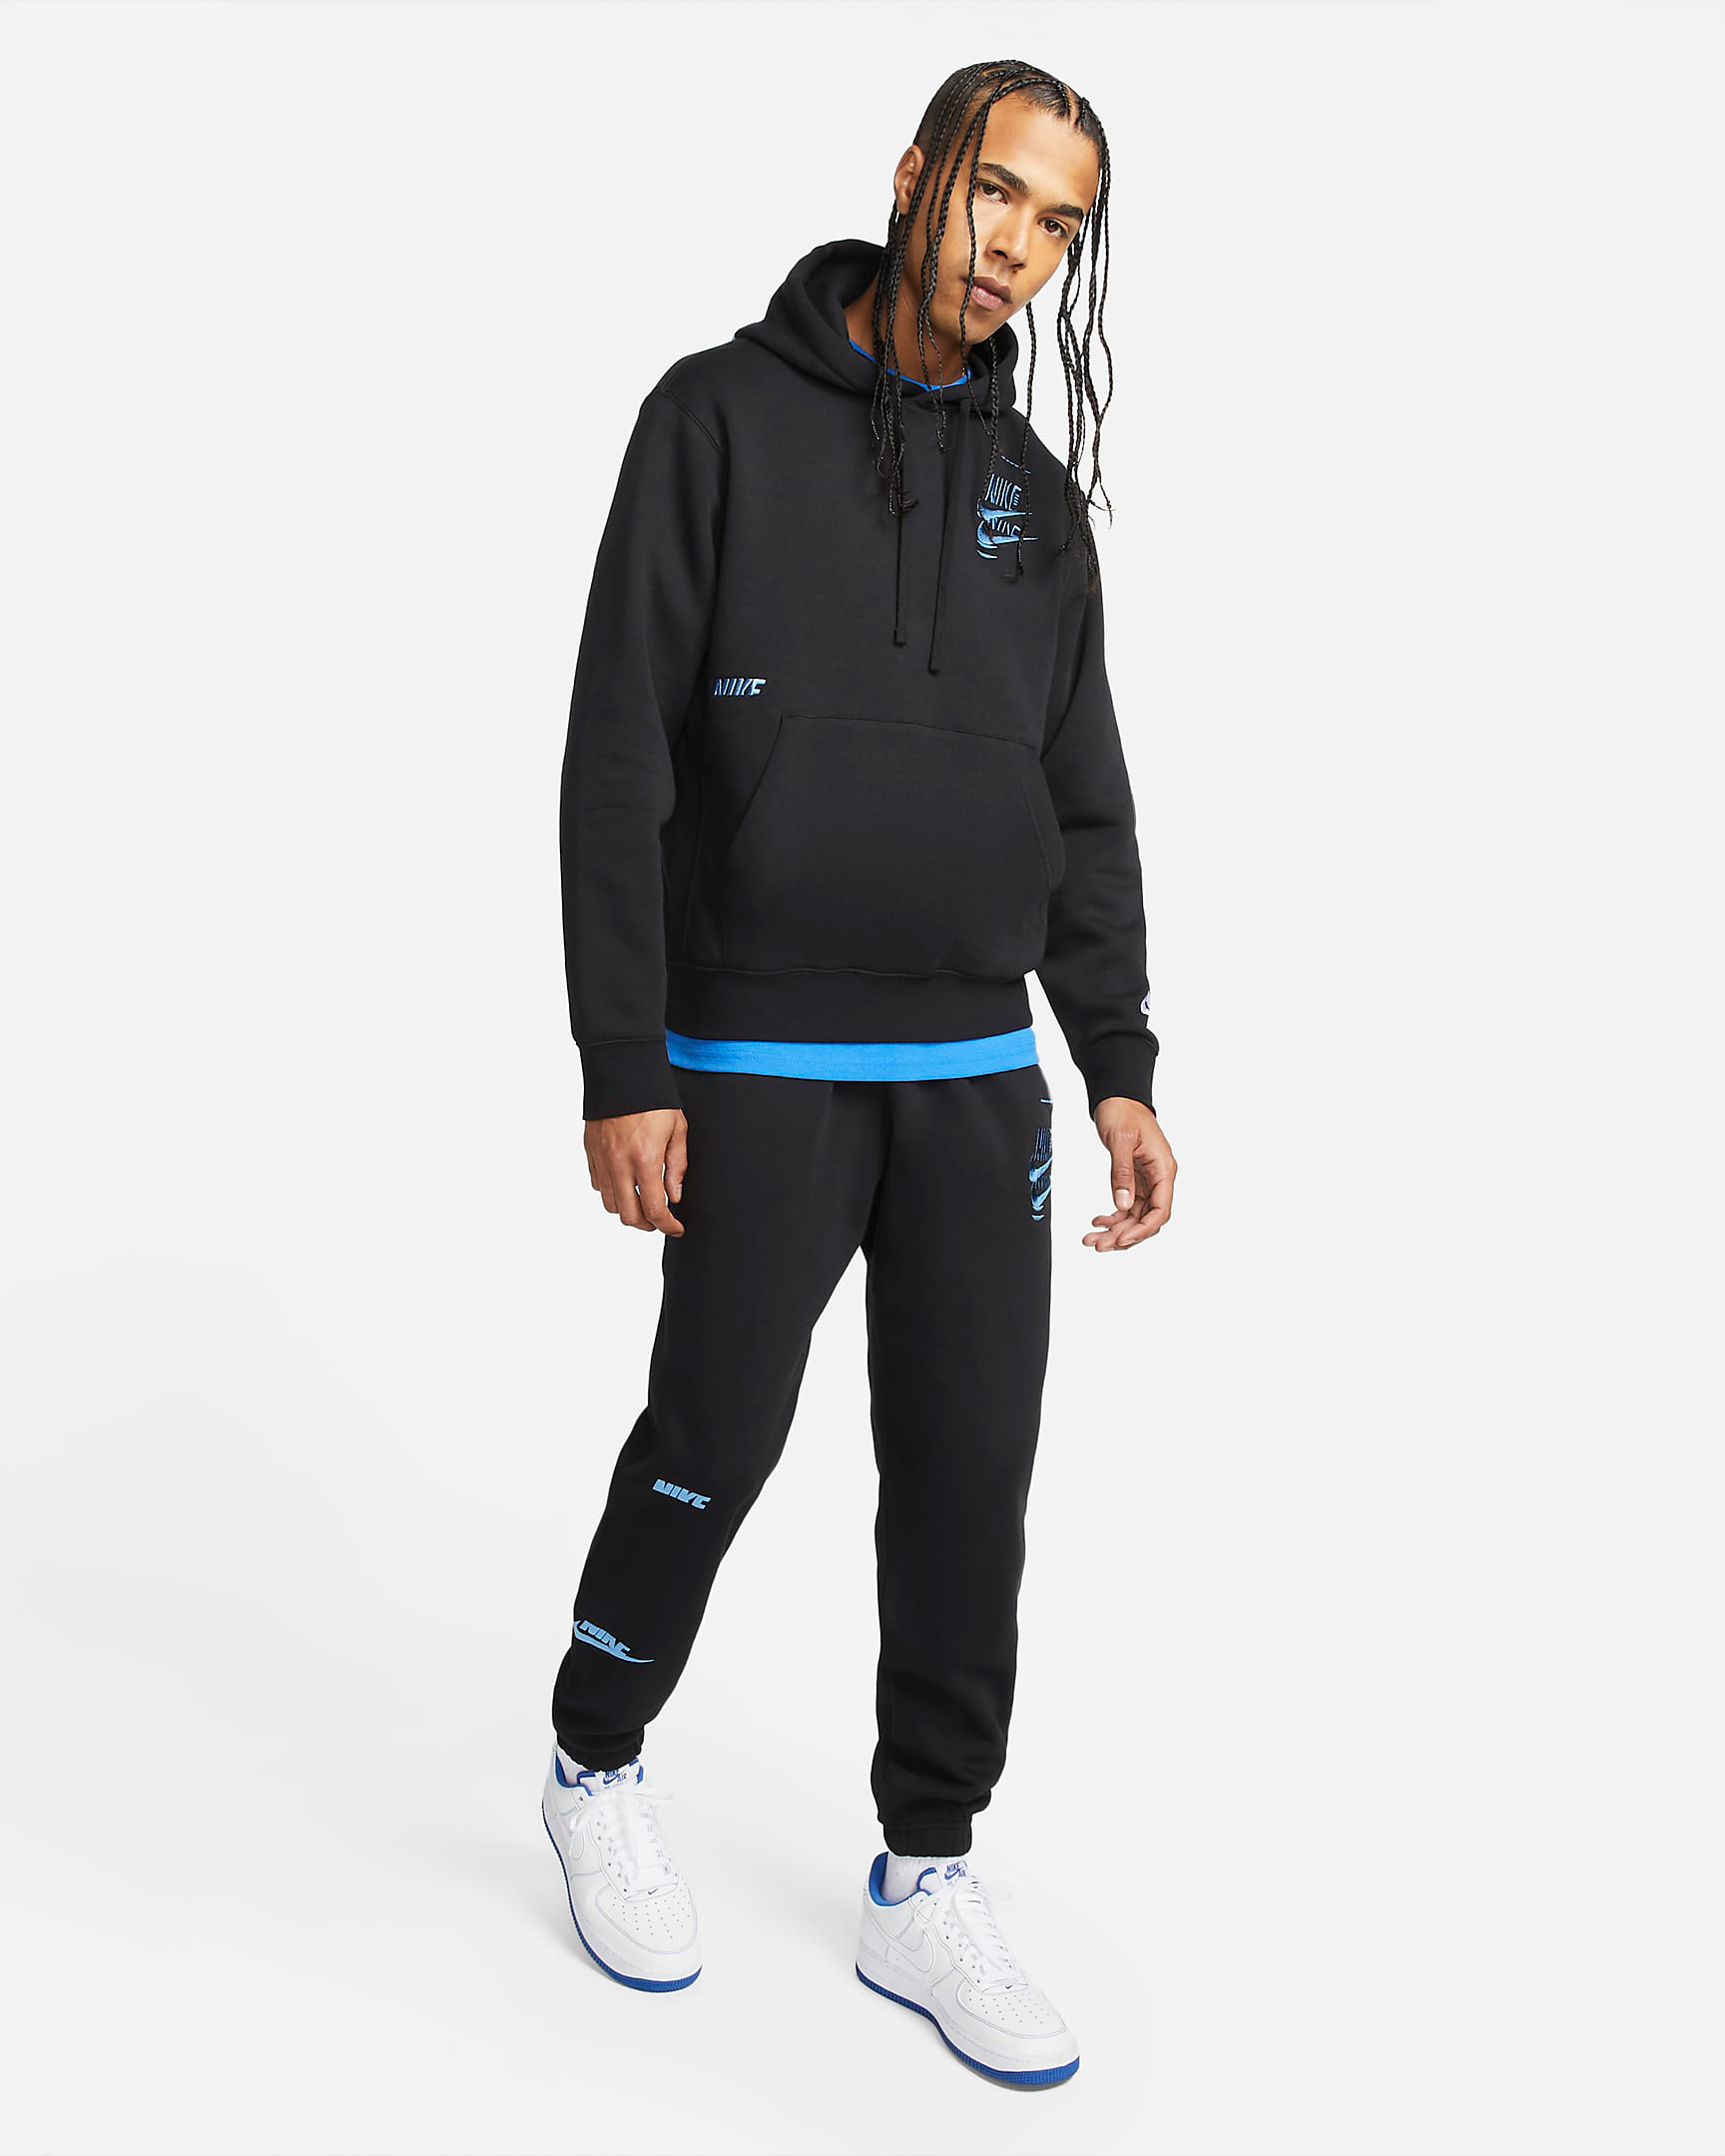 nike-black-dark-marina-blue-sport-essentials-hoodie-pants-outfit